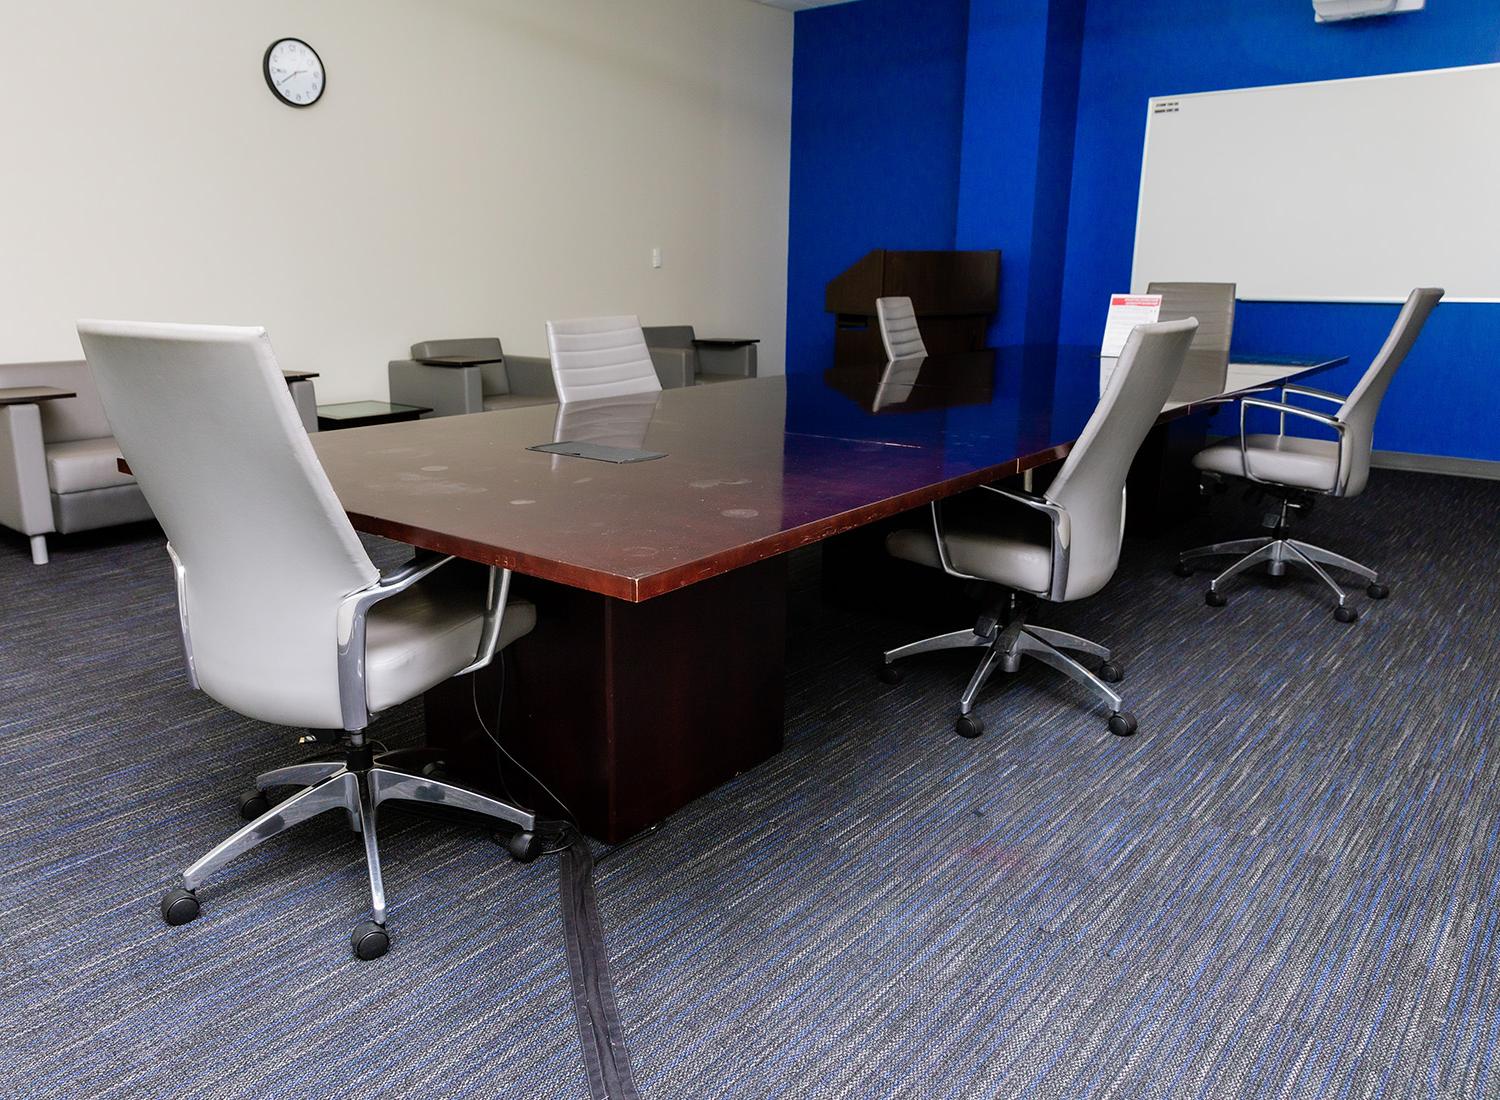 105号会议室，向右展示一张会议桌和椅子, 一个讲台, 还有一块白板